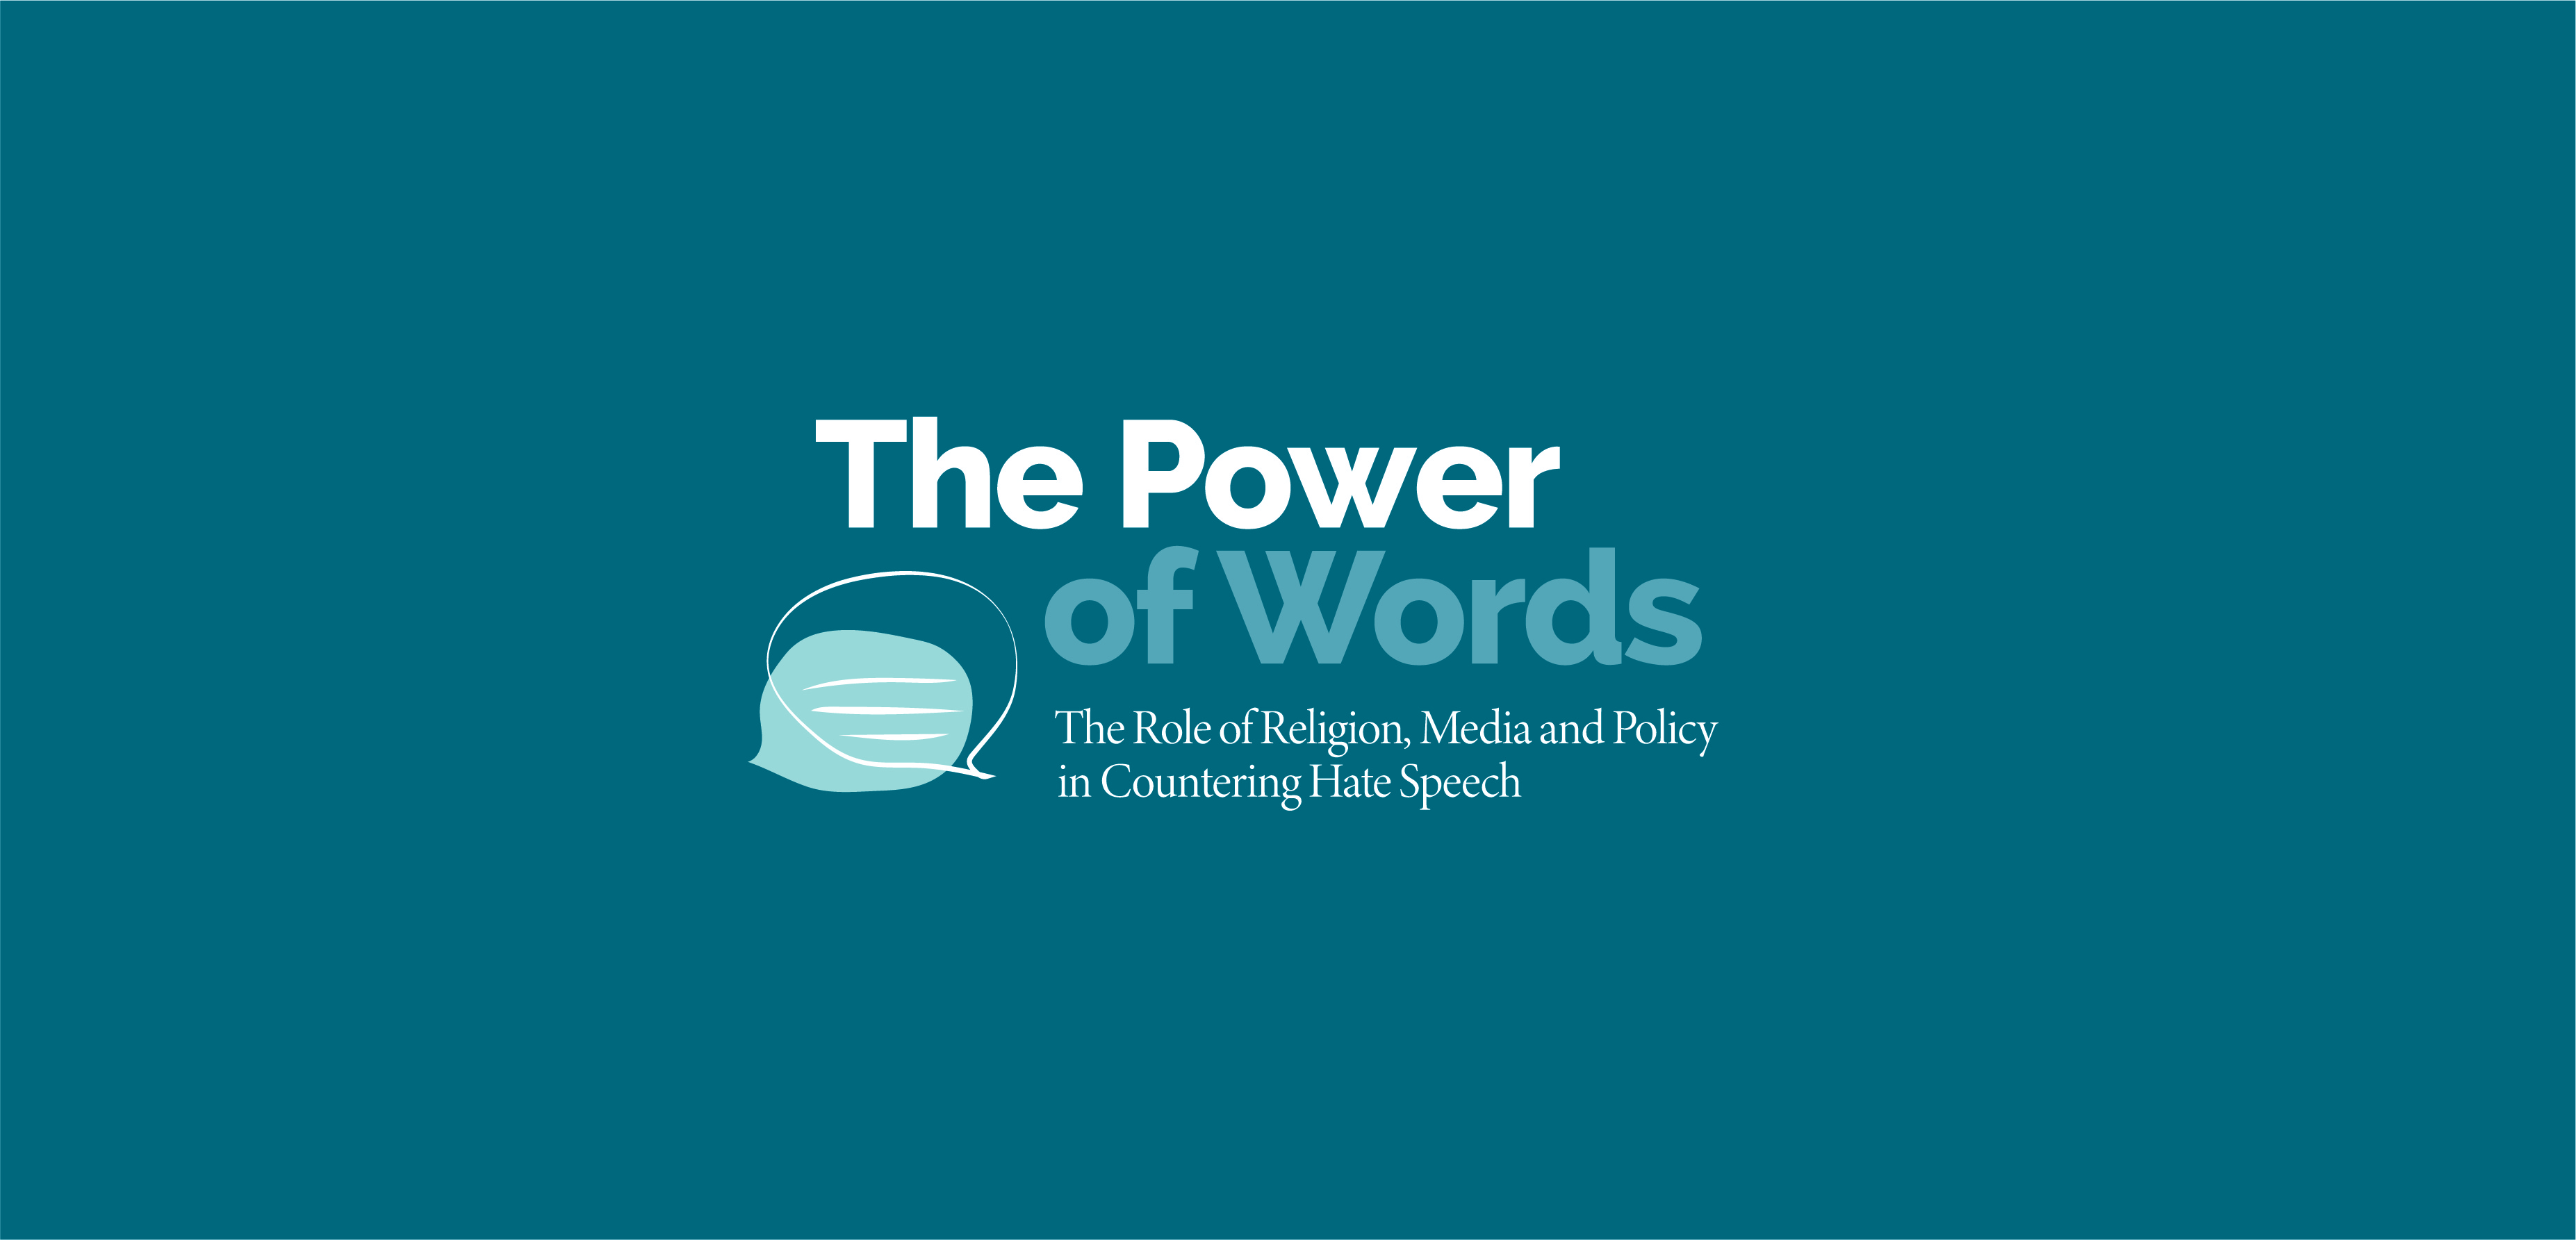 El poder de las palabras: El papel de la religión, los medios de comunicación y la política en la lucha contra el discurso del odio